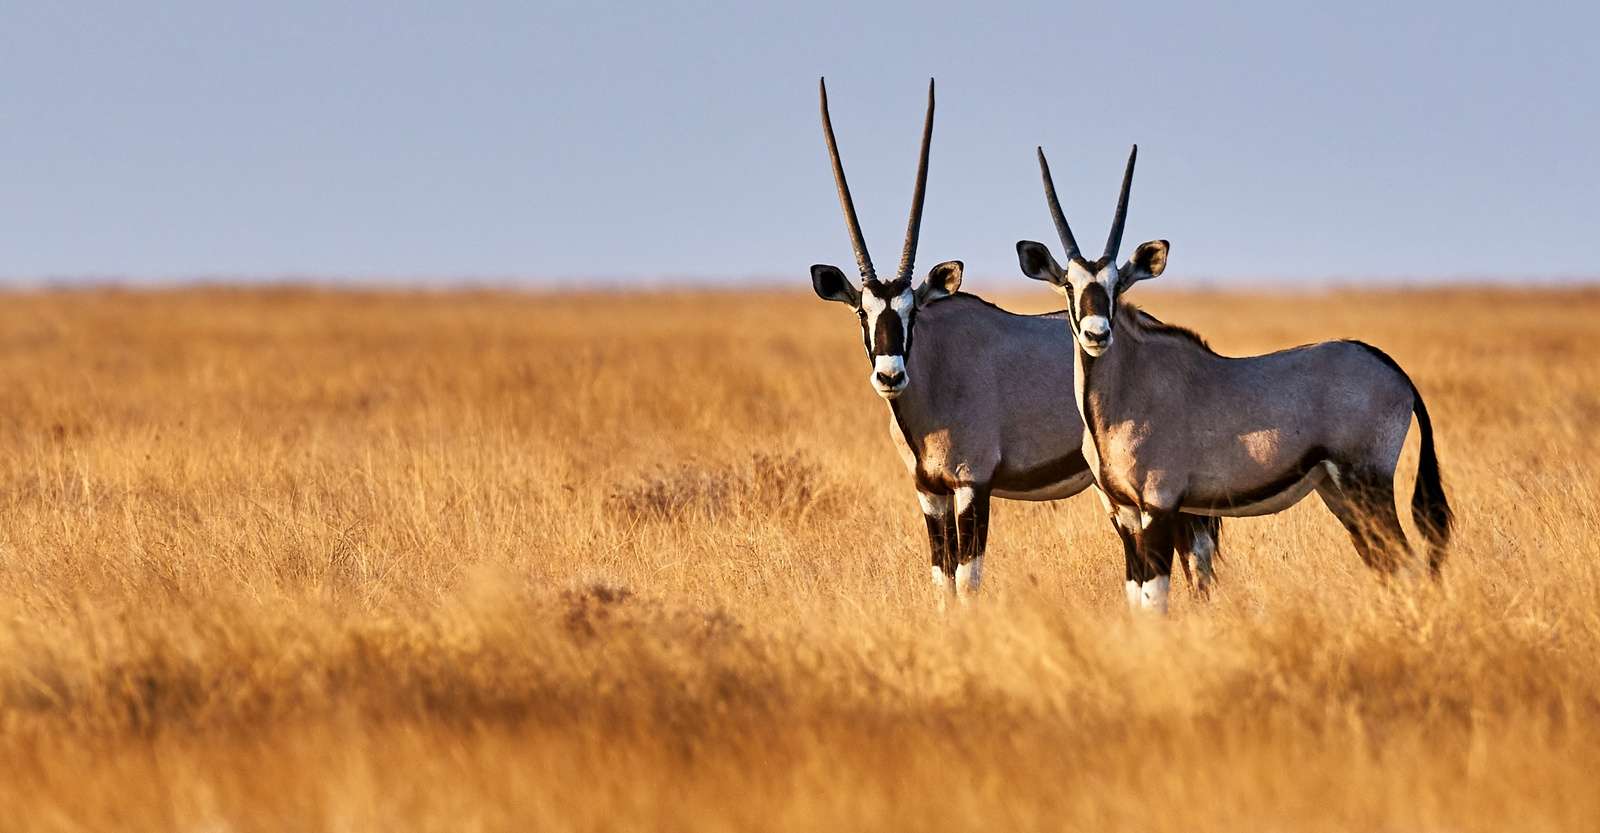 Oryxes, Etosha National Park, Namibia.